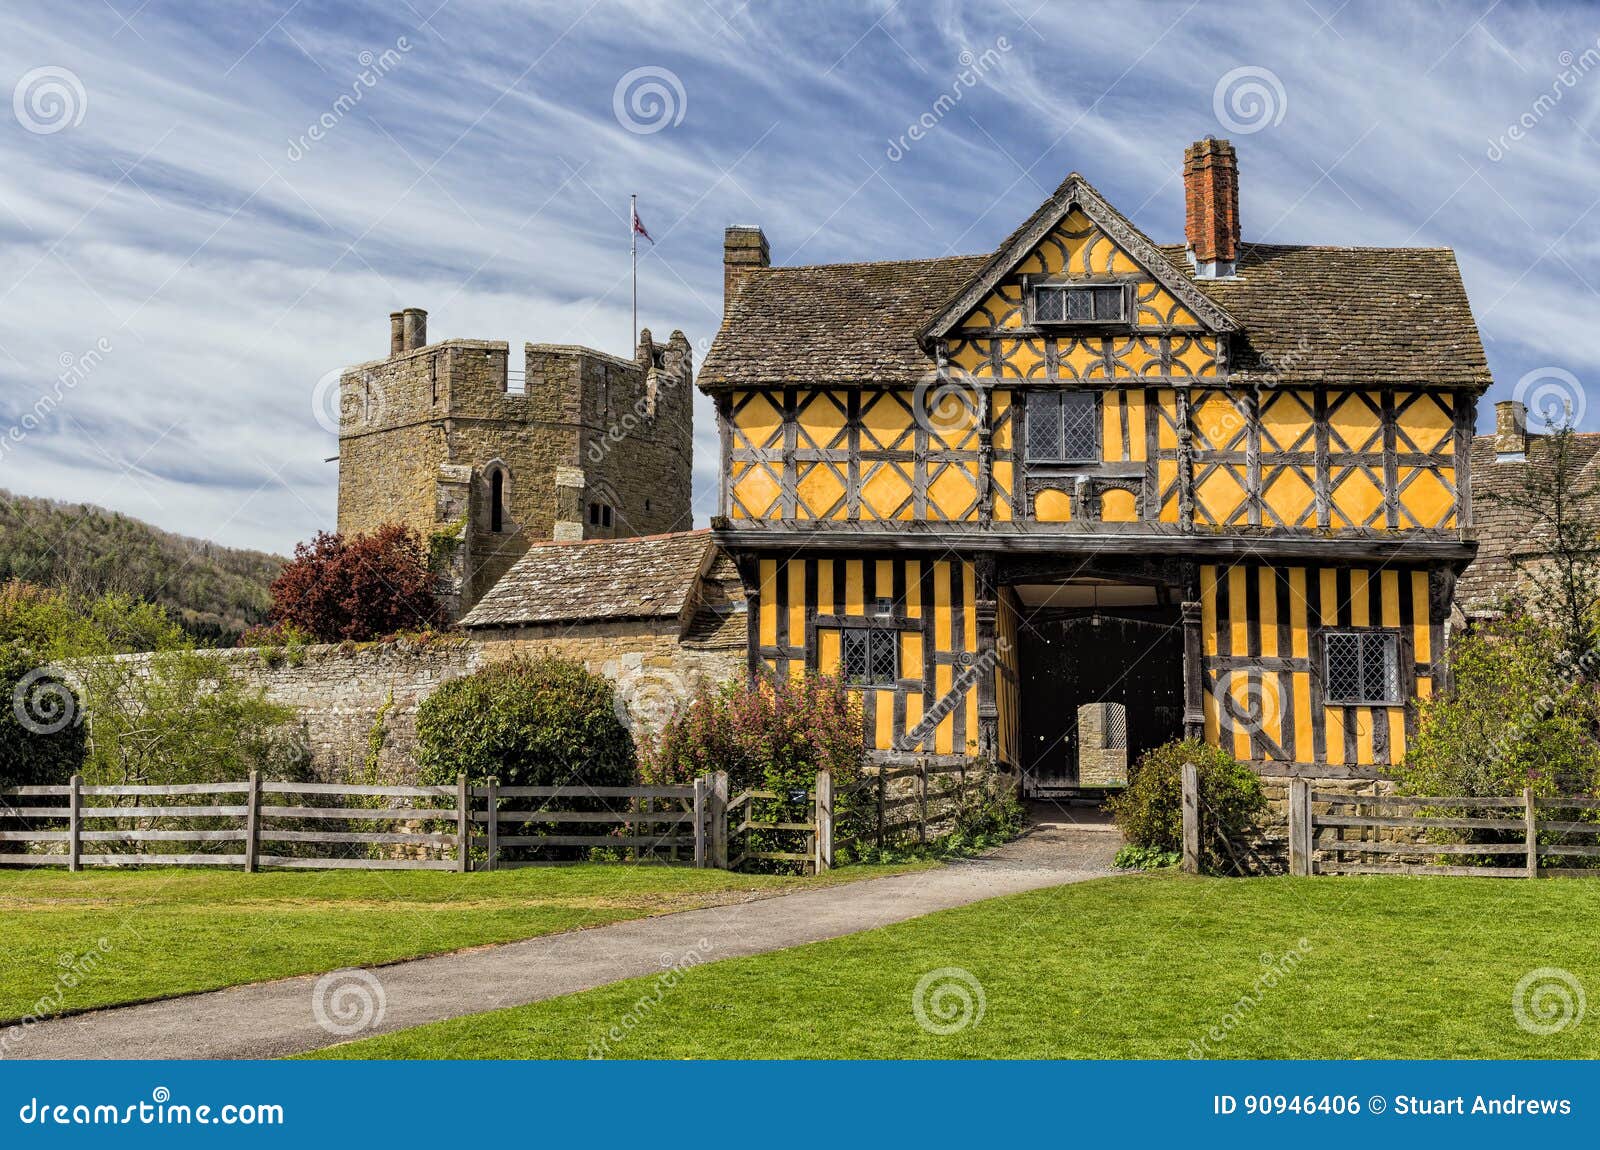 stokesay castle gatehouse, shropshire, england.